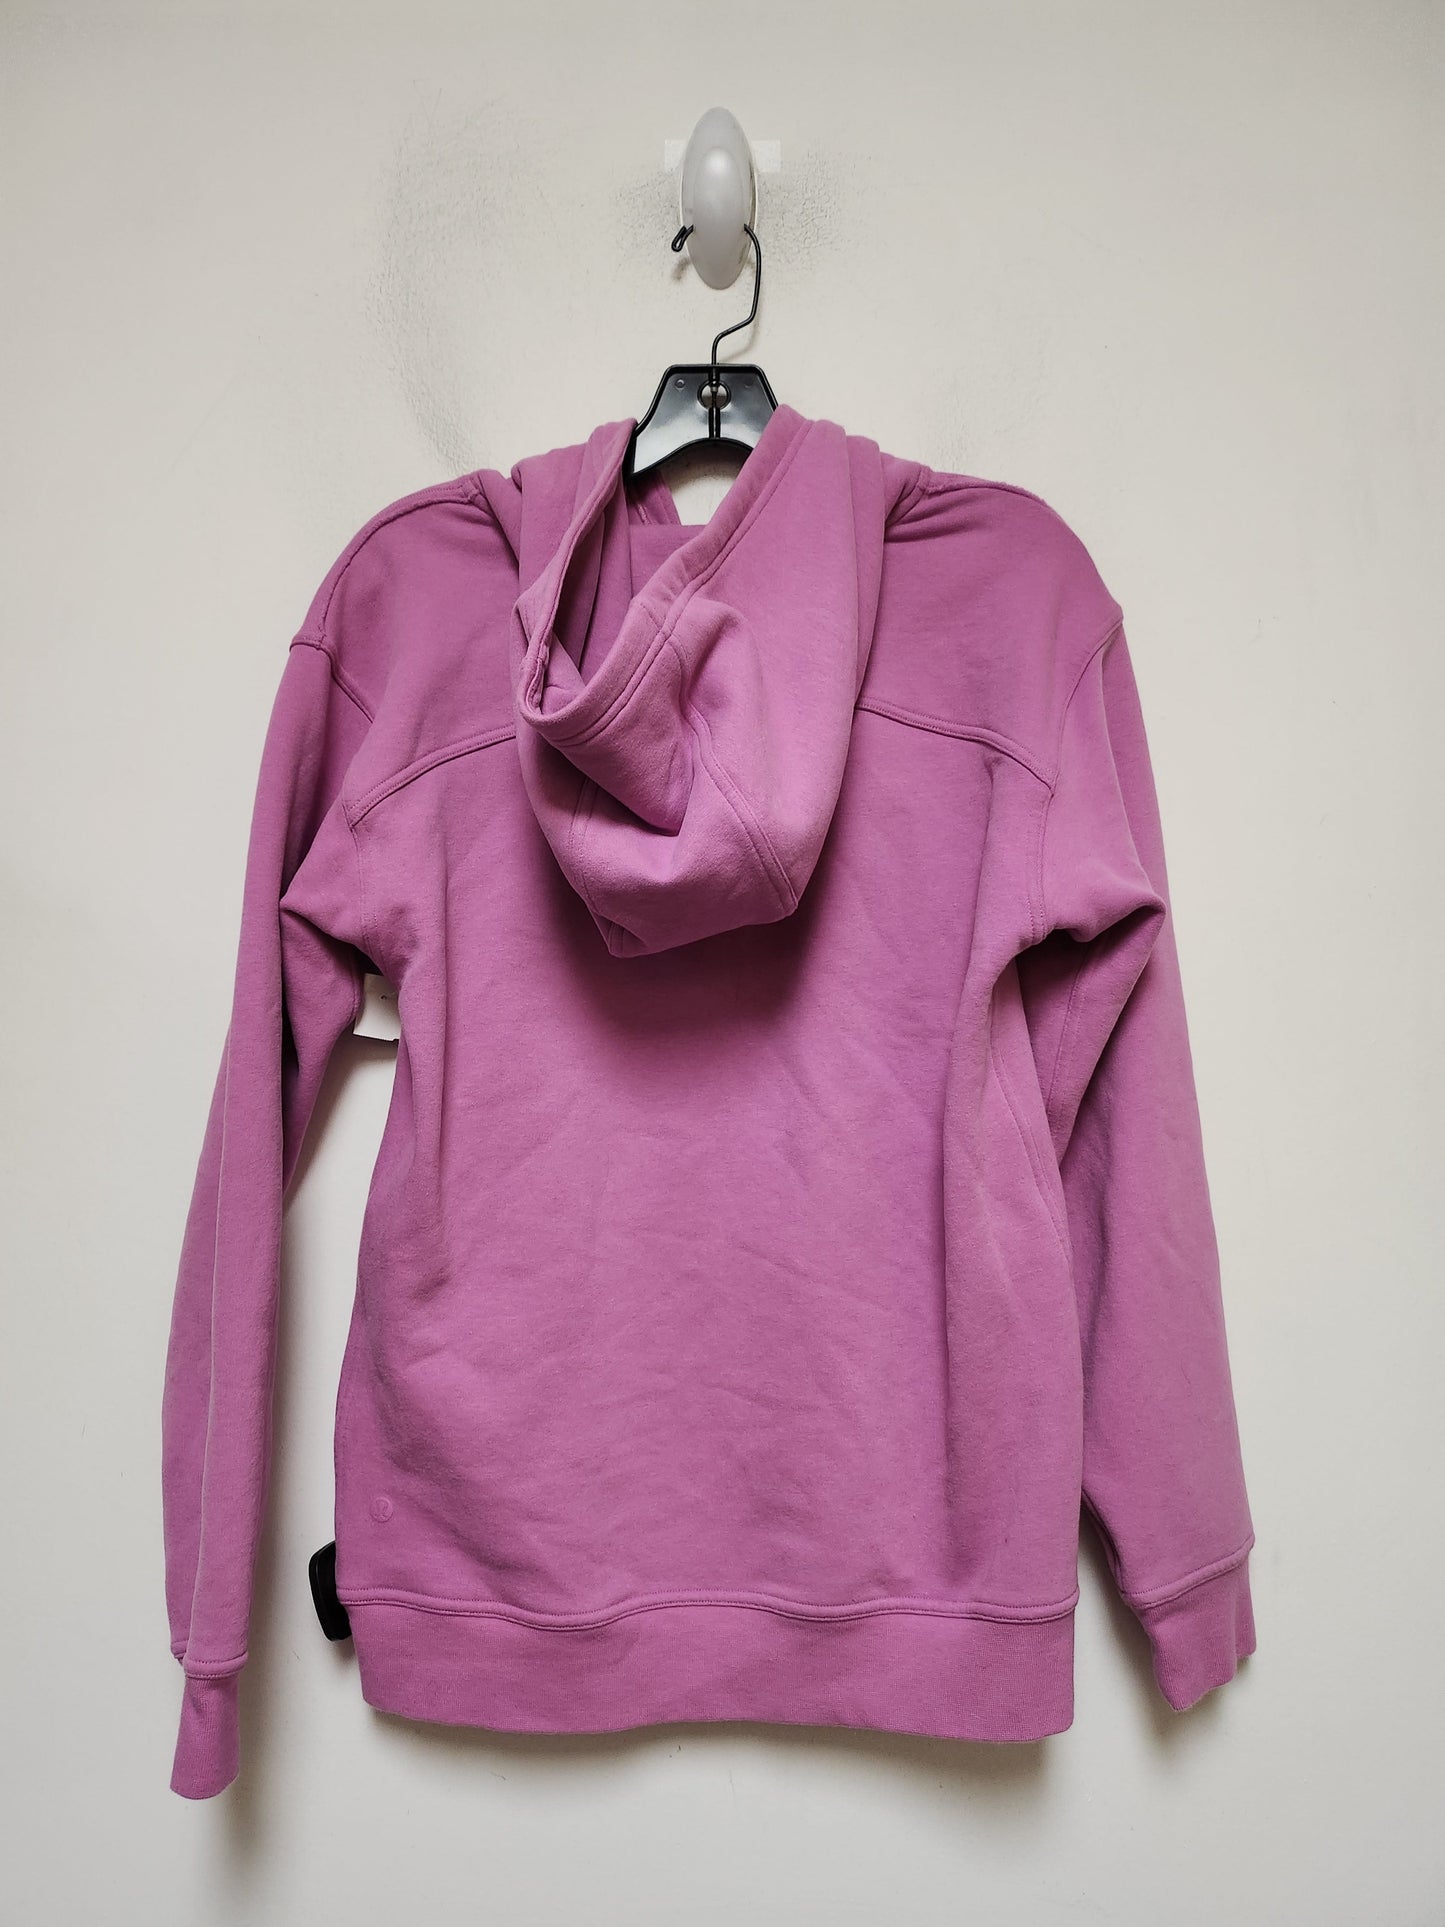 Pink Athletic Sweatshirt Hoodie Lululemon, Size S